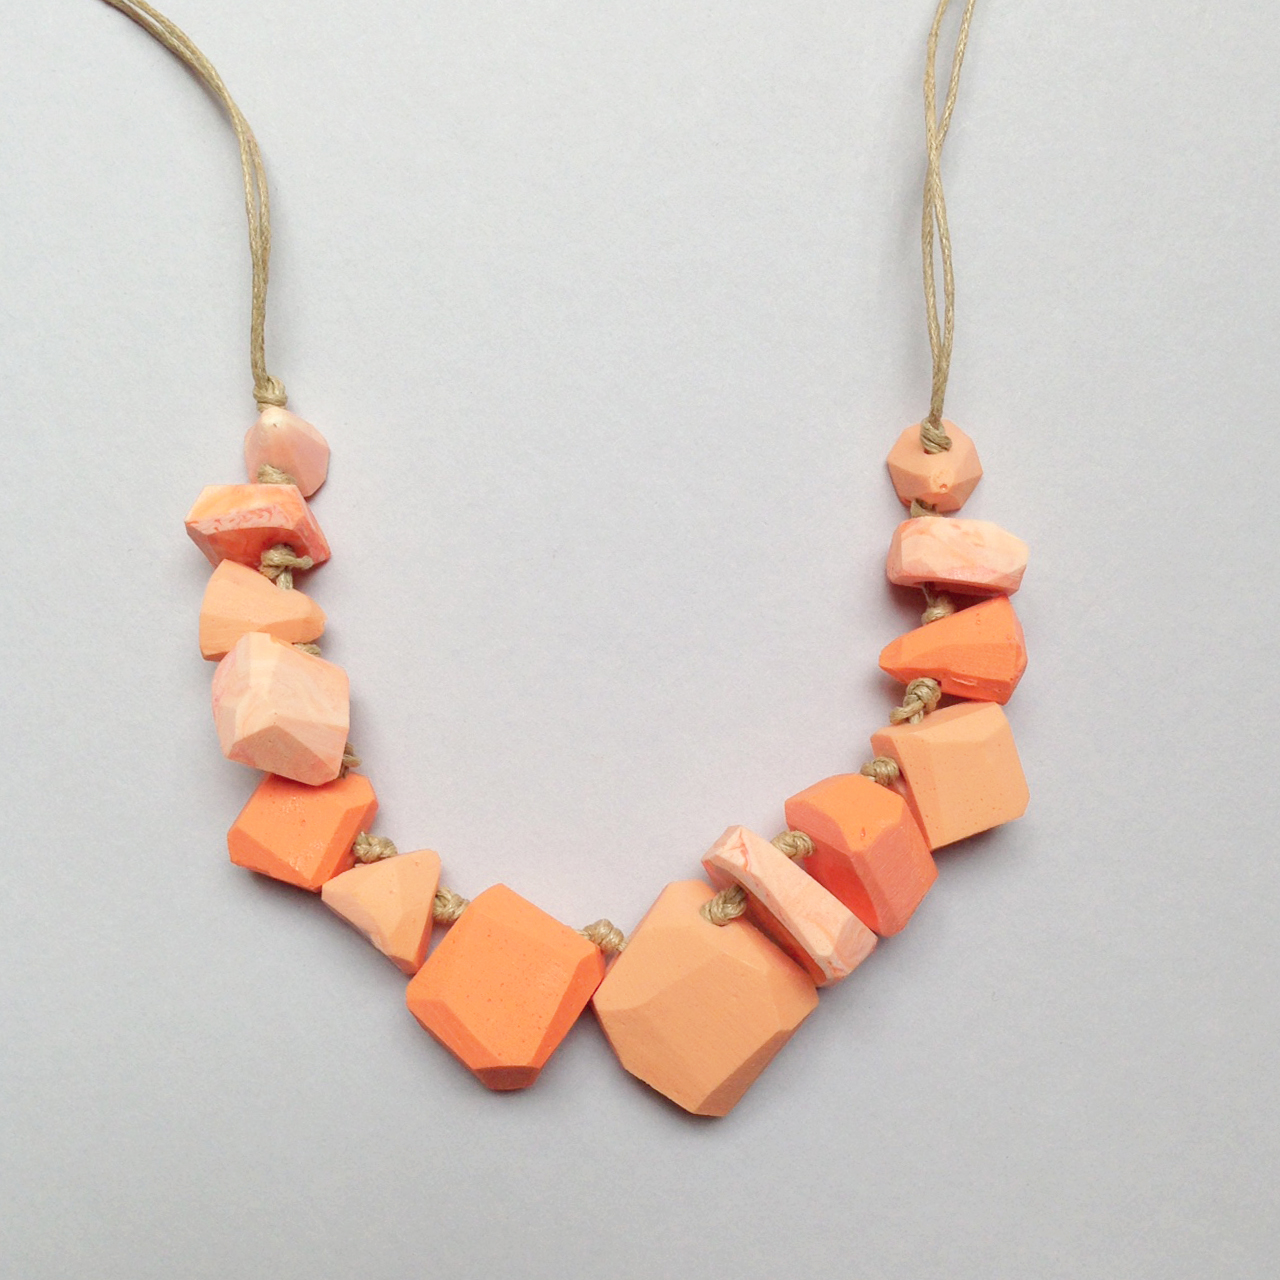 erica sandgren handmade resin necklace falling for florin